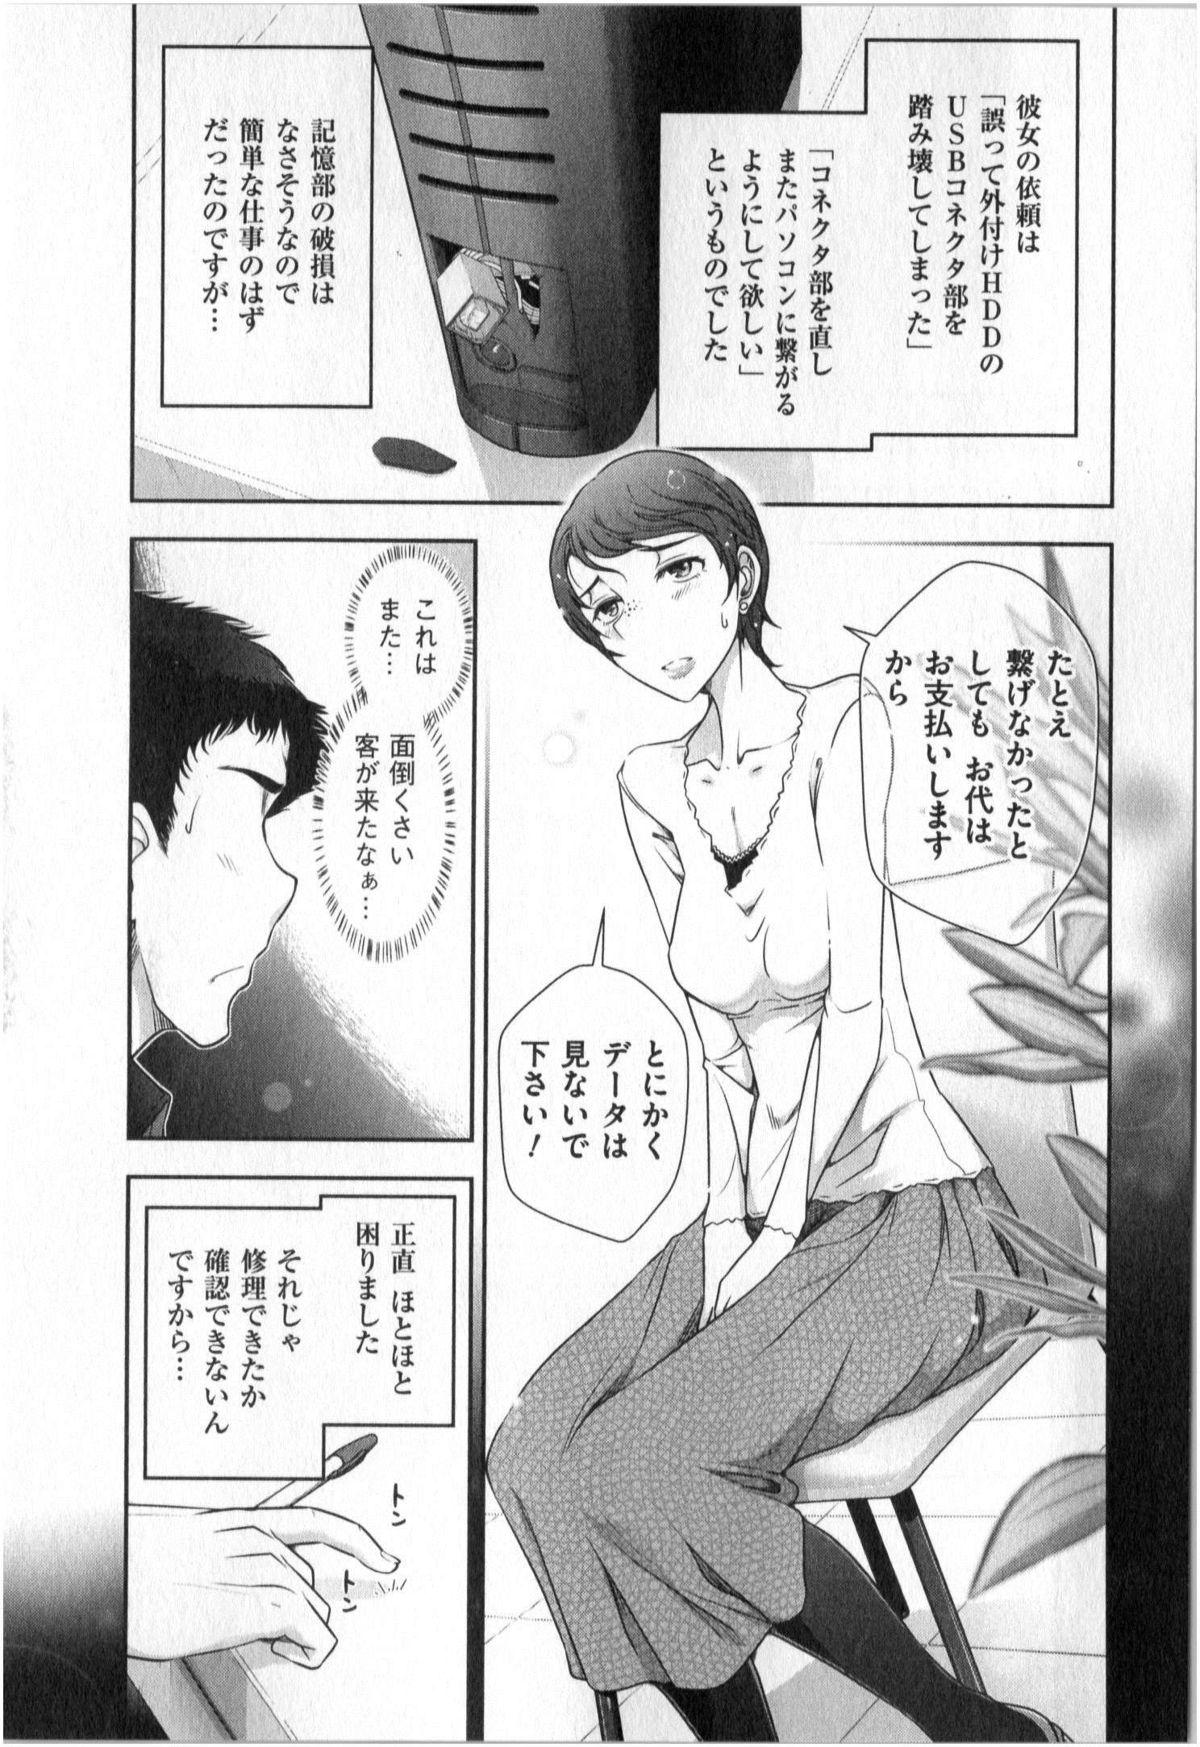 Yonimo Ecchi na Toshidensetsu vol. 01 46